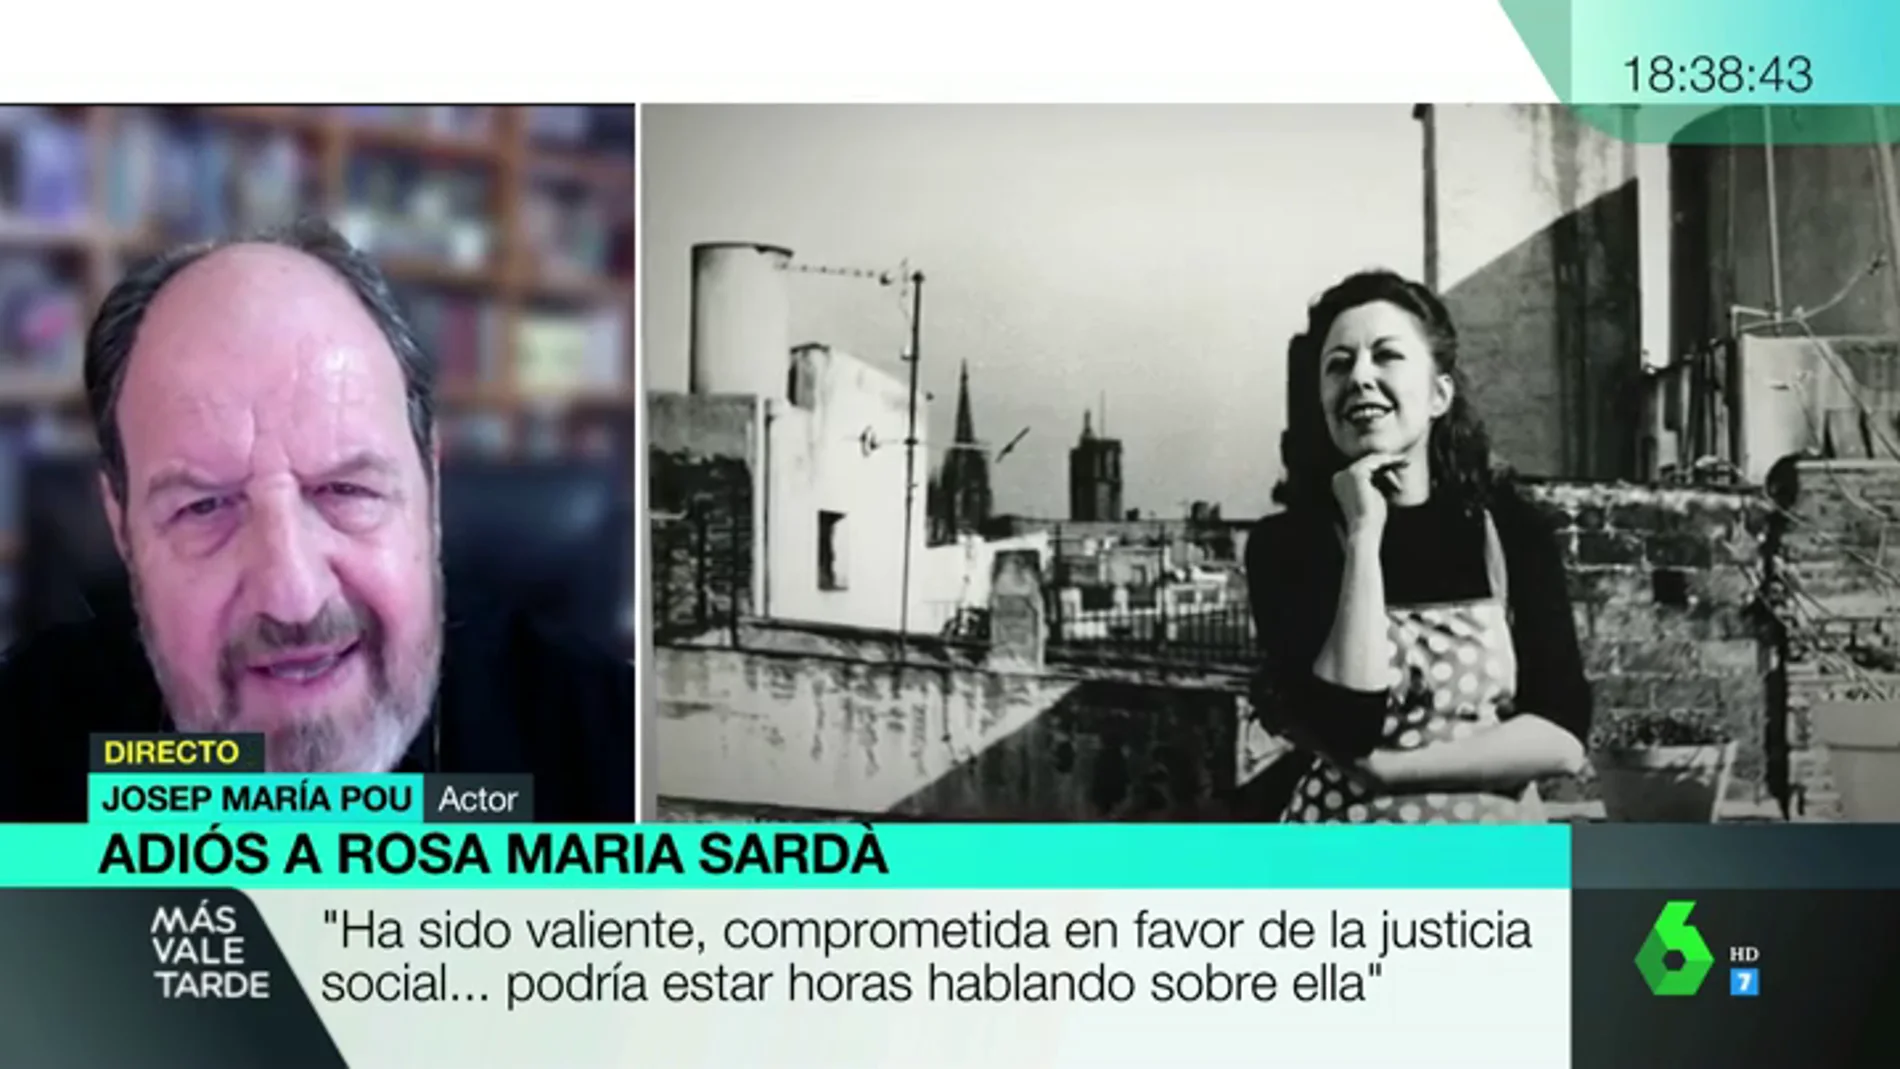 Las palabras de cariño de Josep María Pou a Rosa María Sardà: "Era valiente, comprometida, siempre al frente para reivindicar la justicia social"